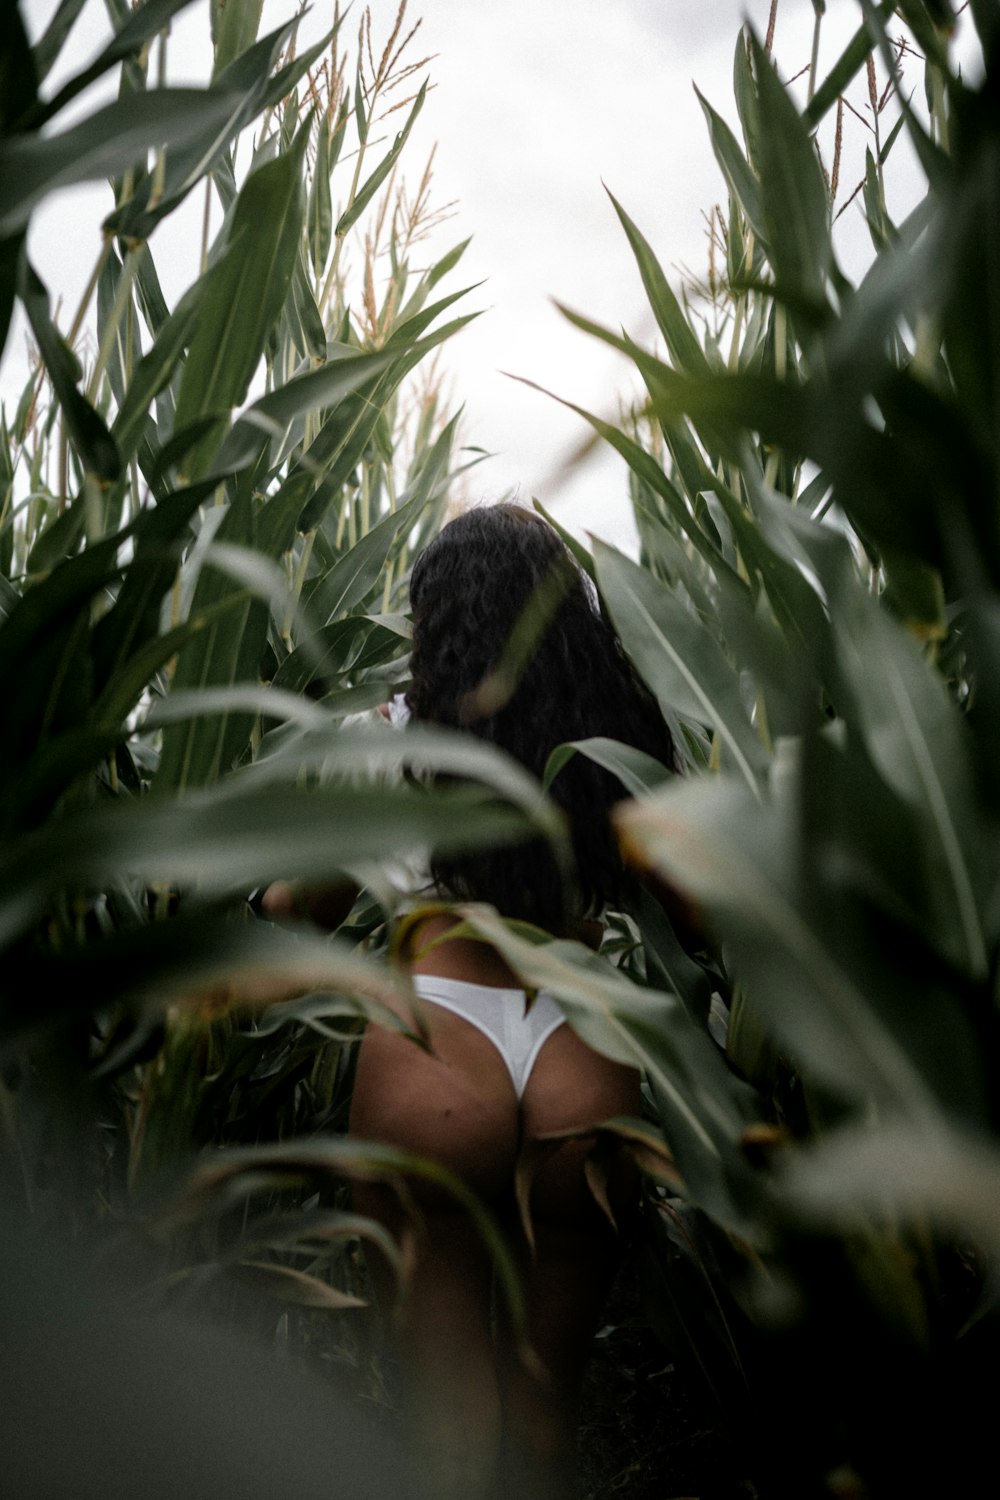 mulher na parte inferior do biquíni preto e branco em pé no meio das plantas verdes durante o dia